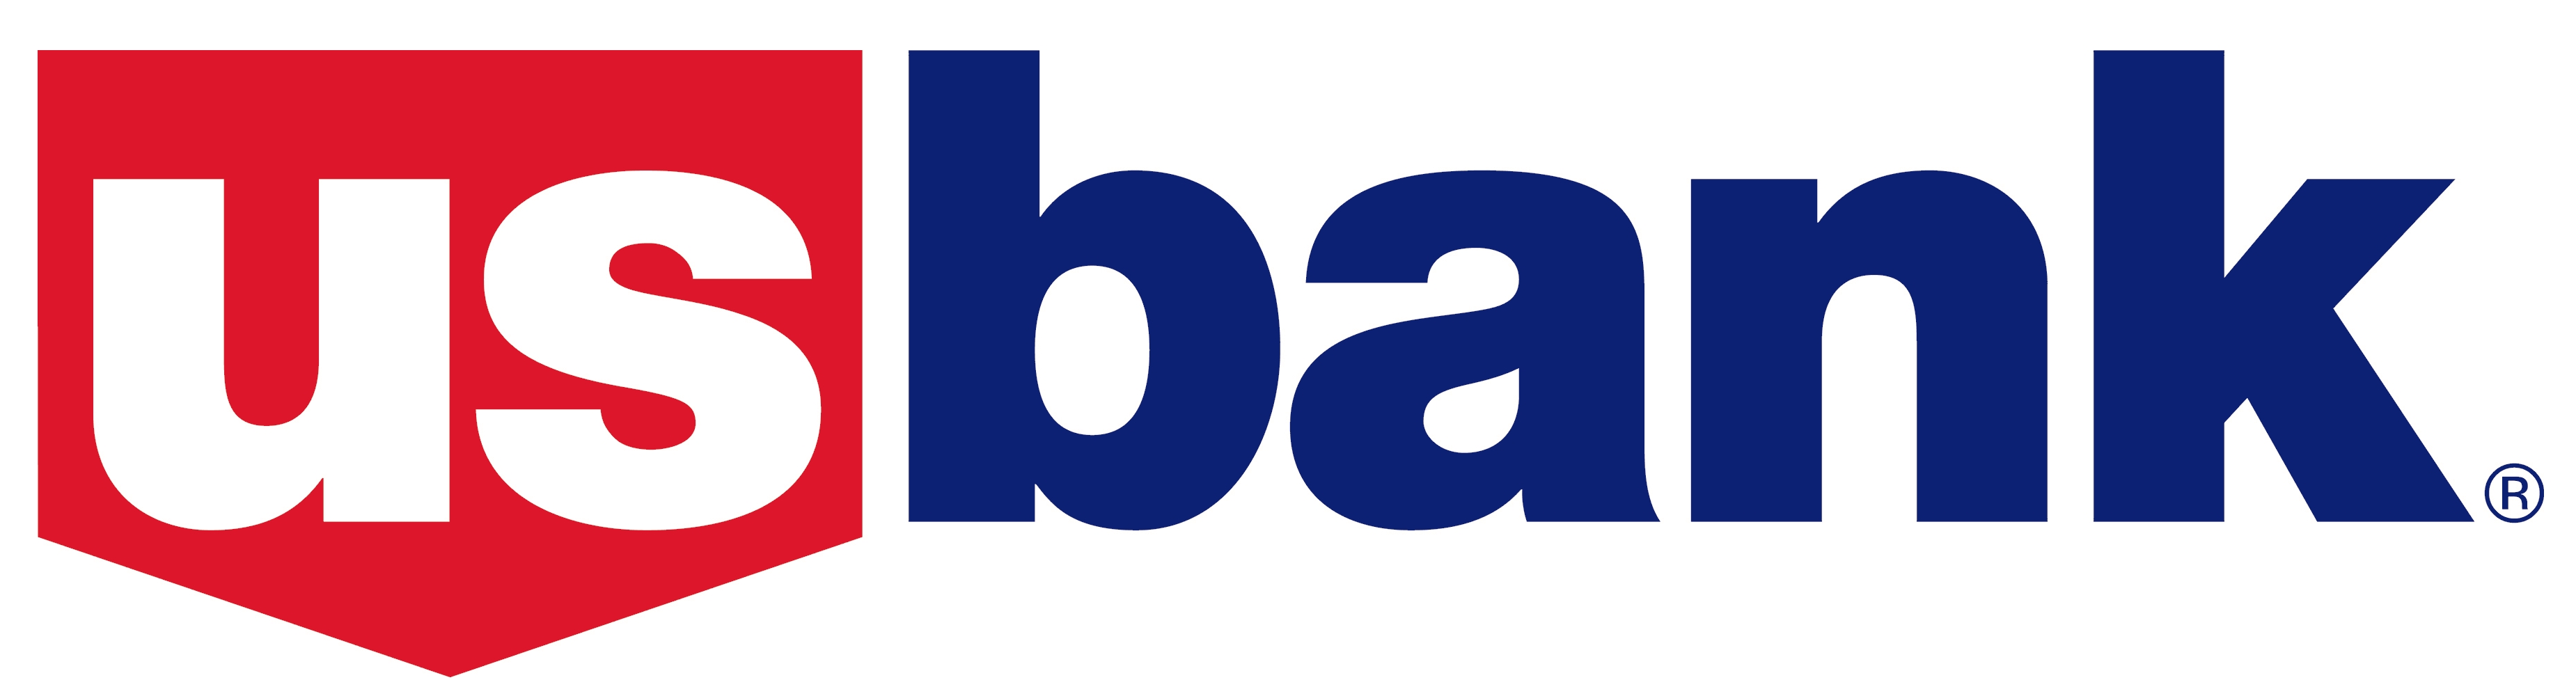 bank clipart bank logo